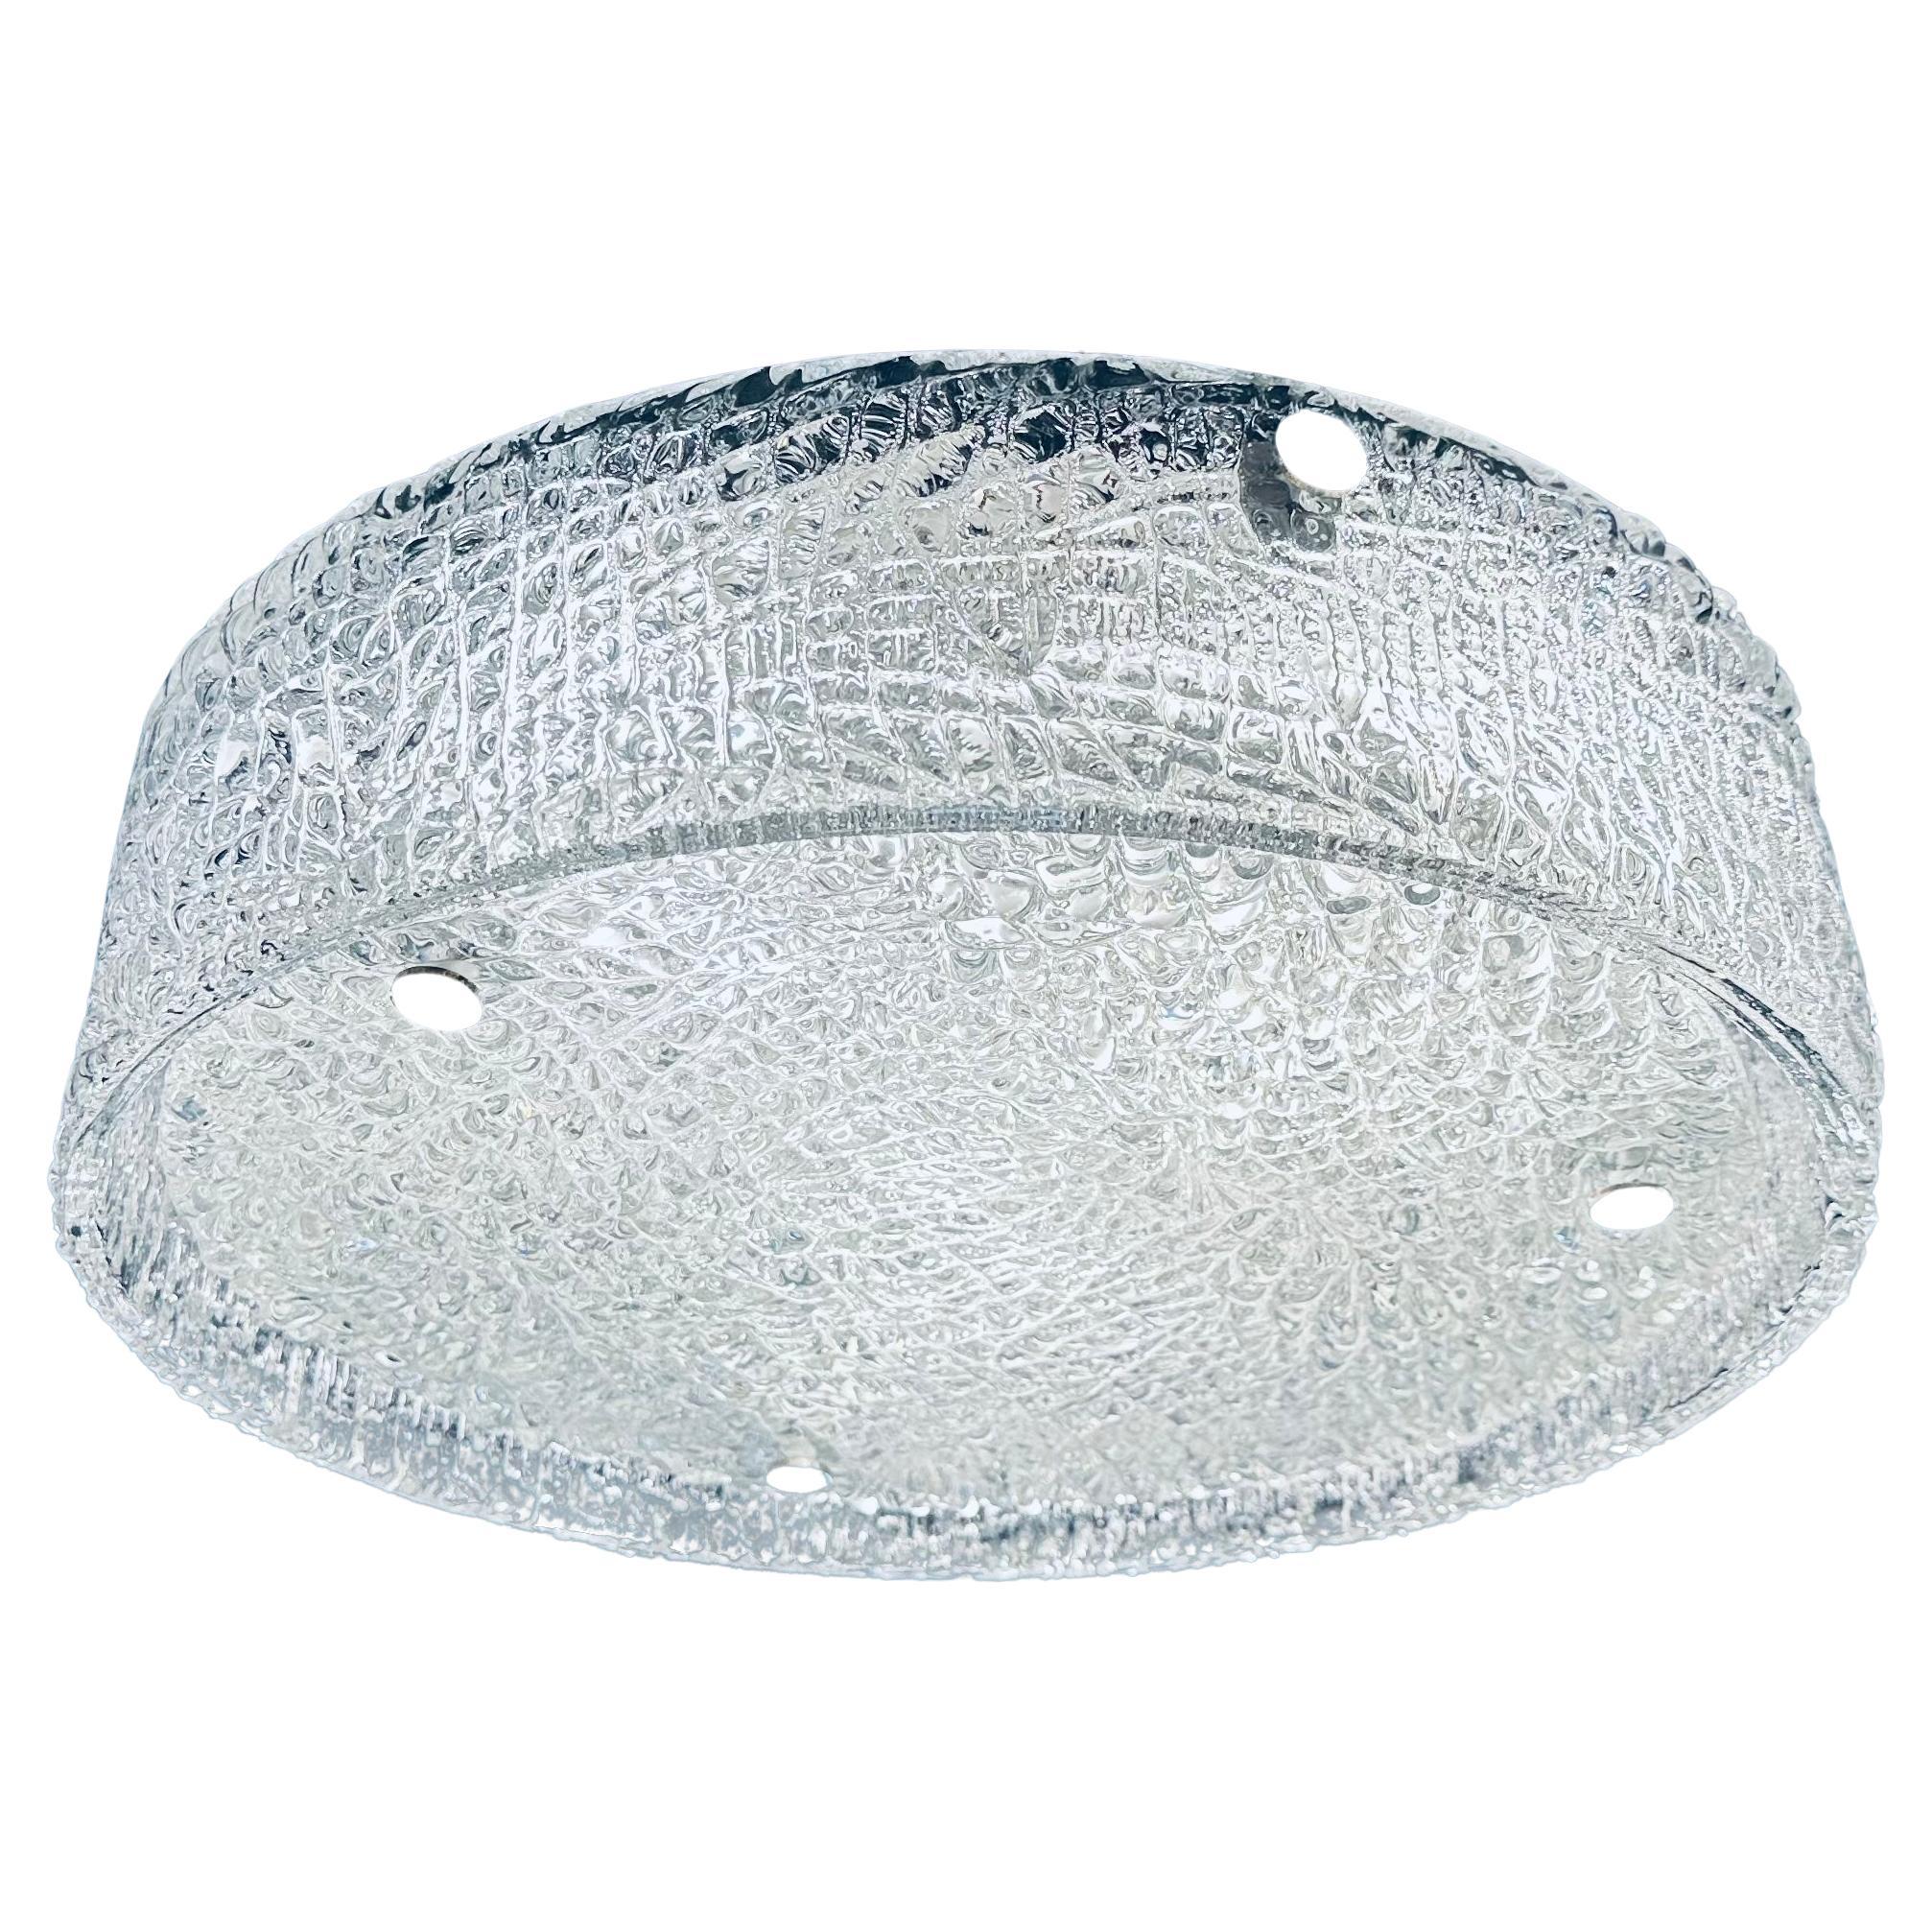 1960s German Kaiser Leuchten Textured Iced Glass Flush Mount Ceiling Light For Sale